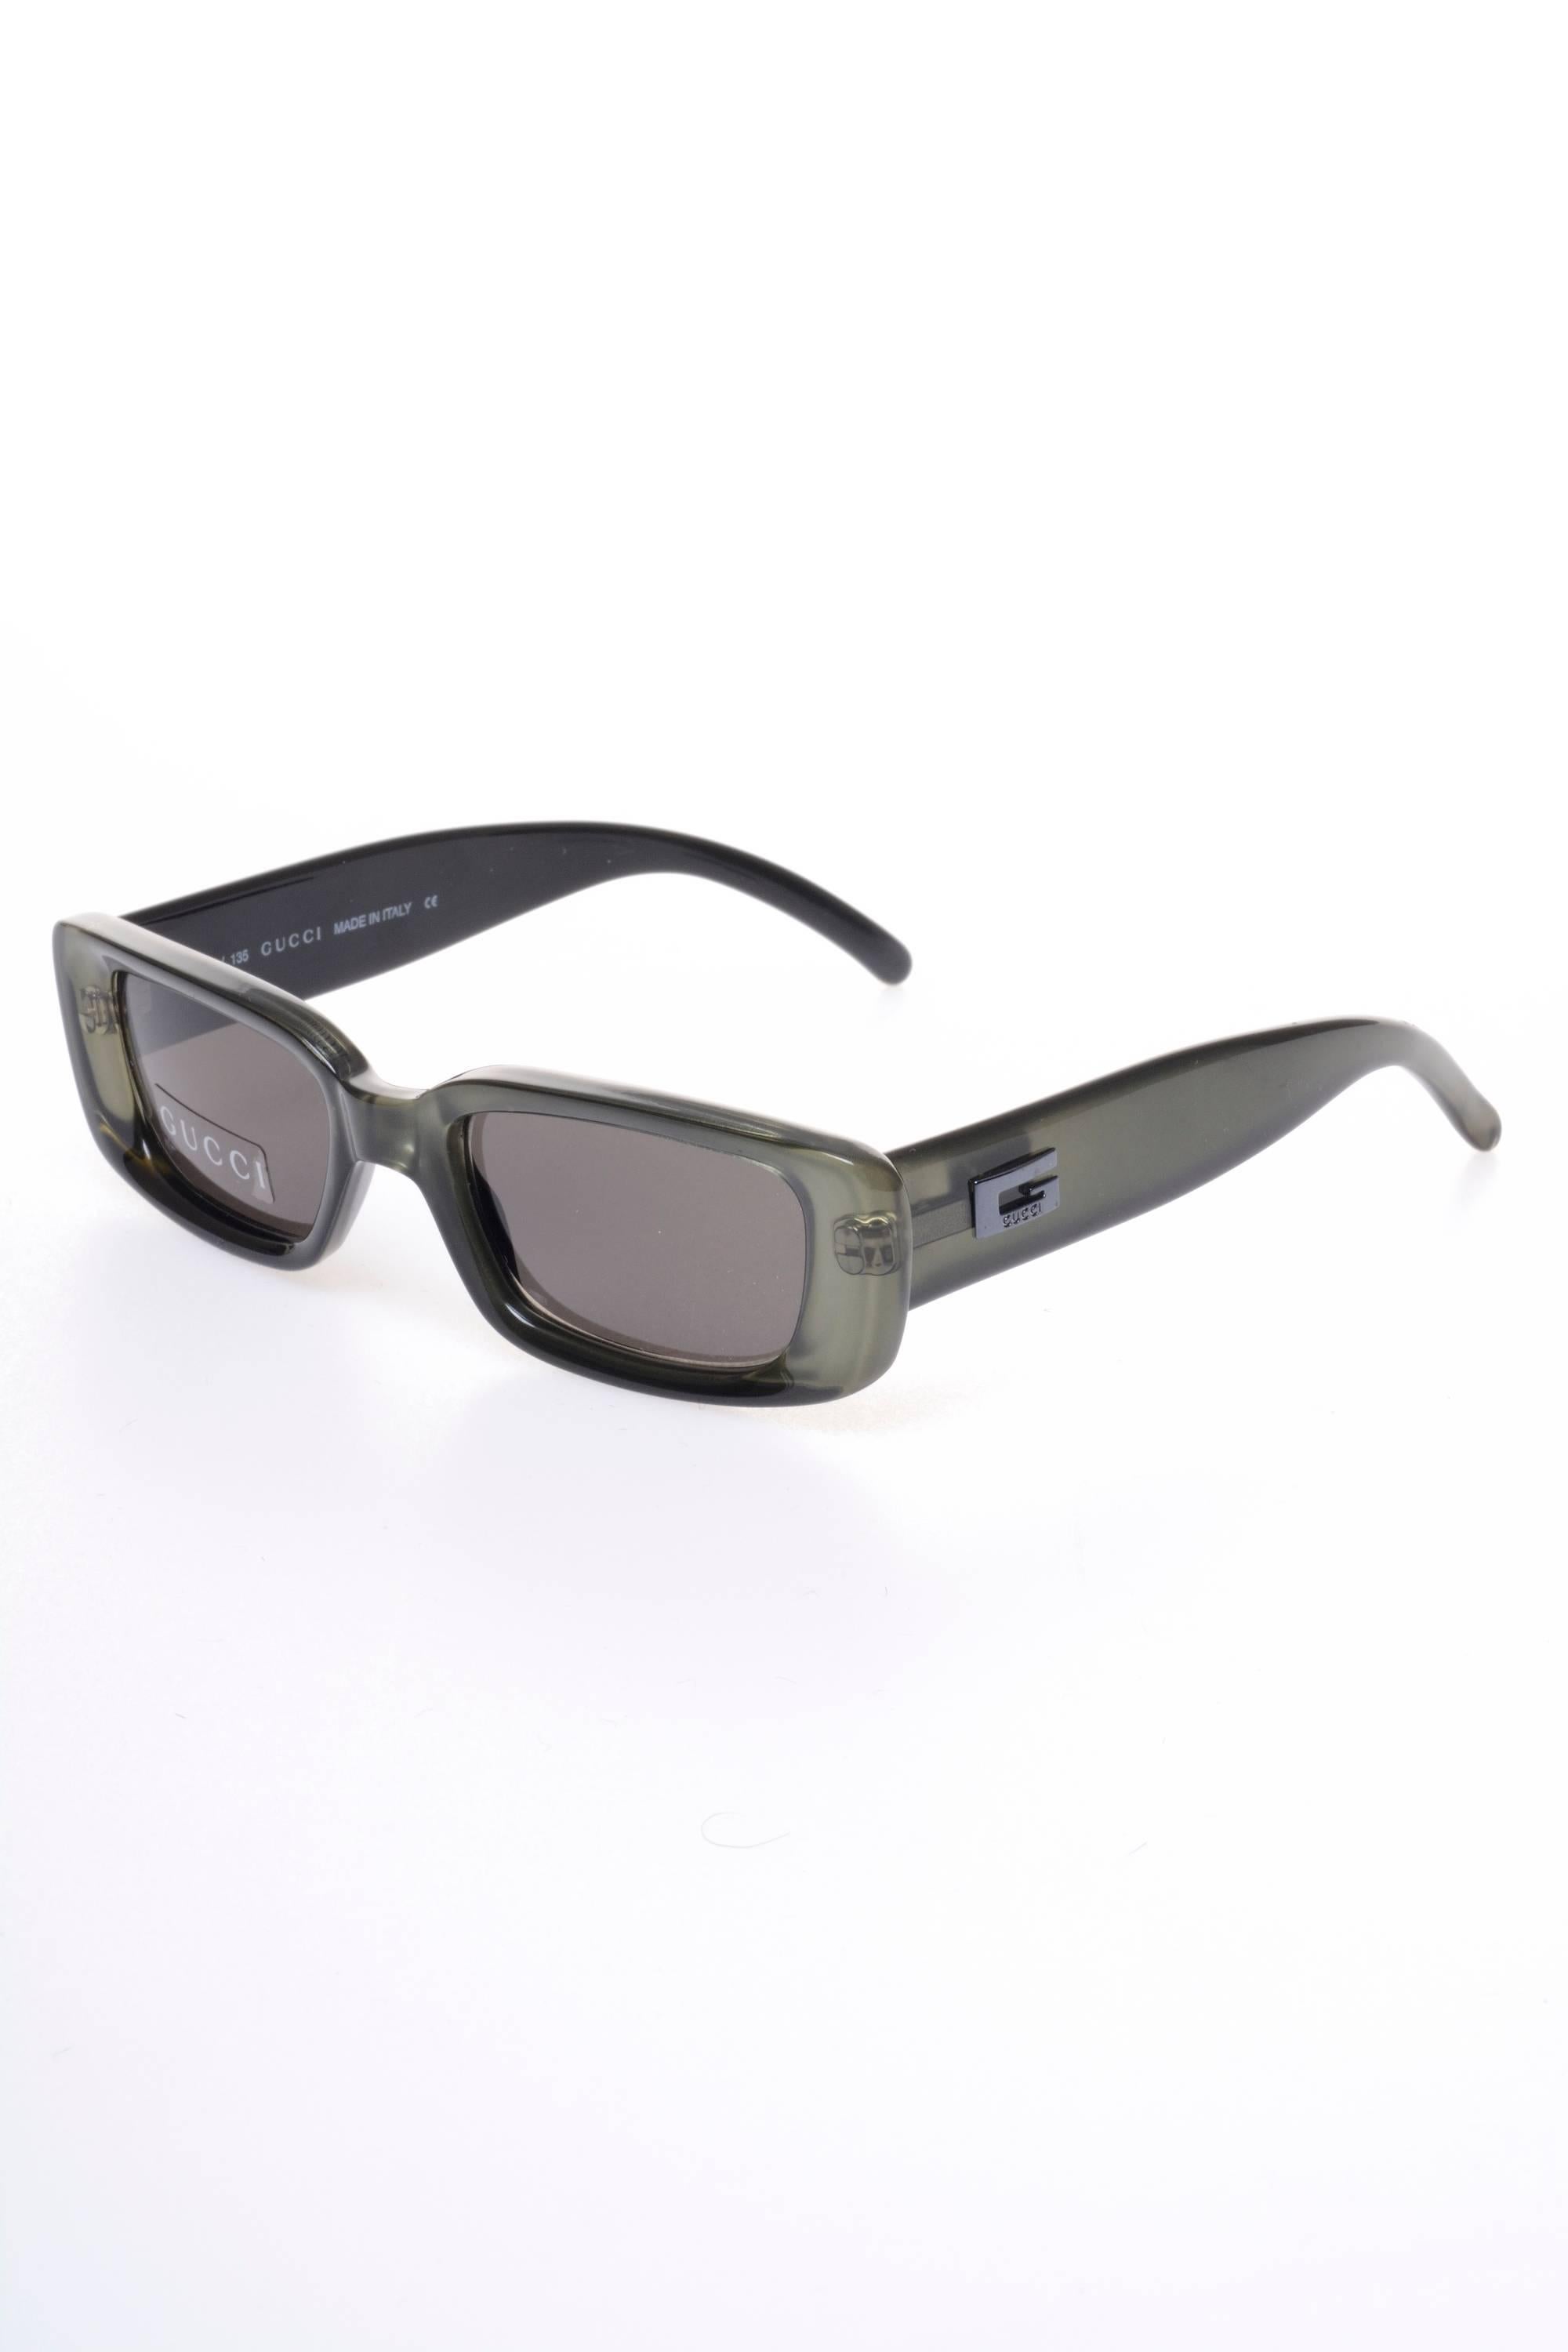 Gray GUCCI Square Sunglasses 